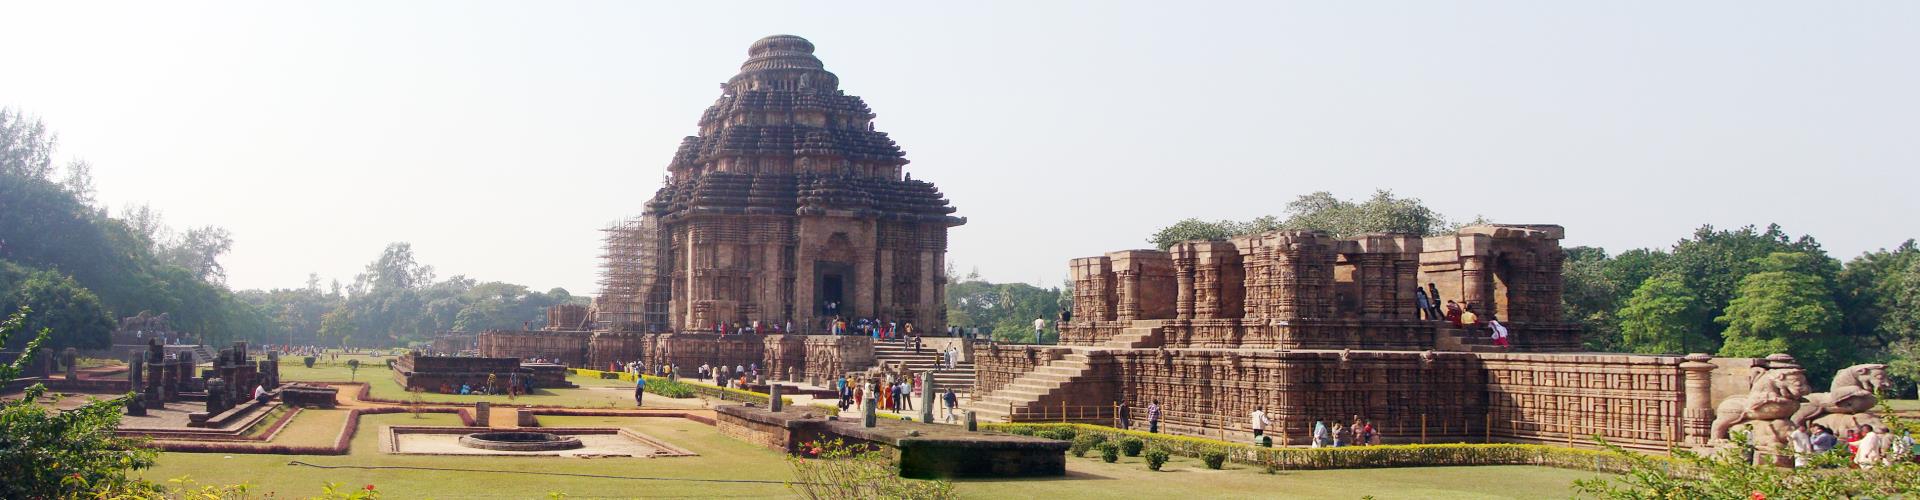 Raghurajpur-Konark Temple-Puri